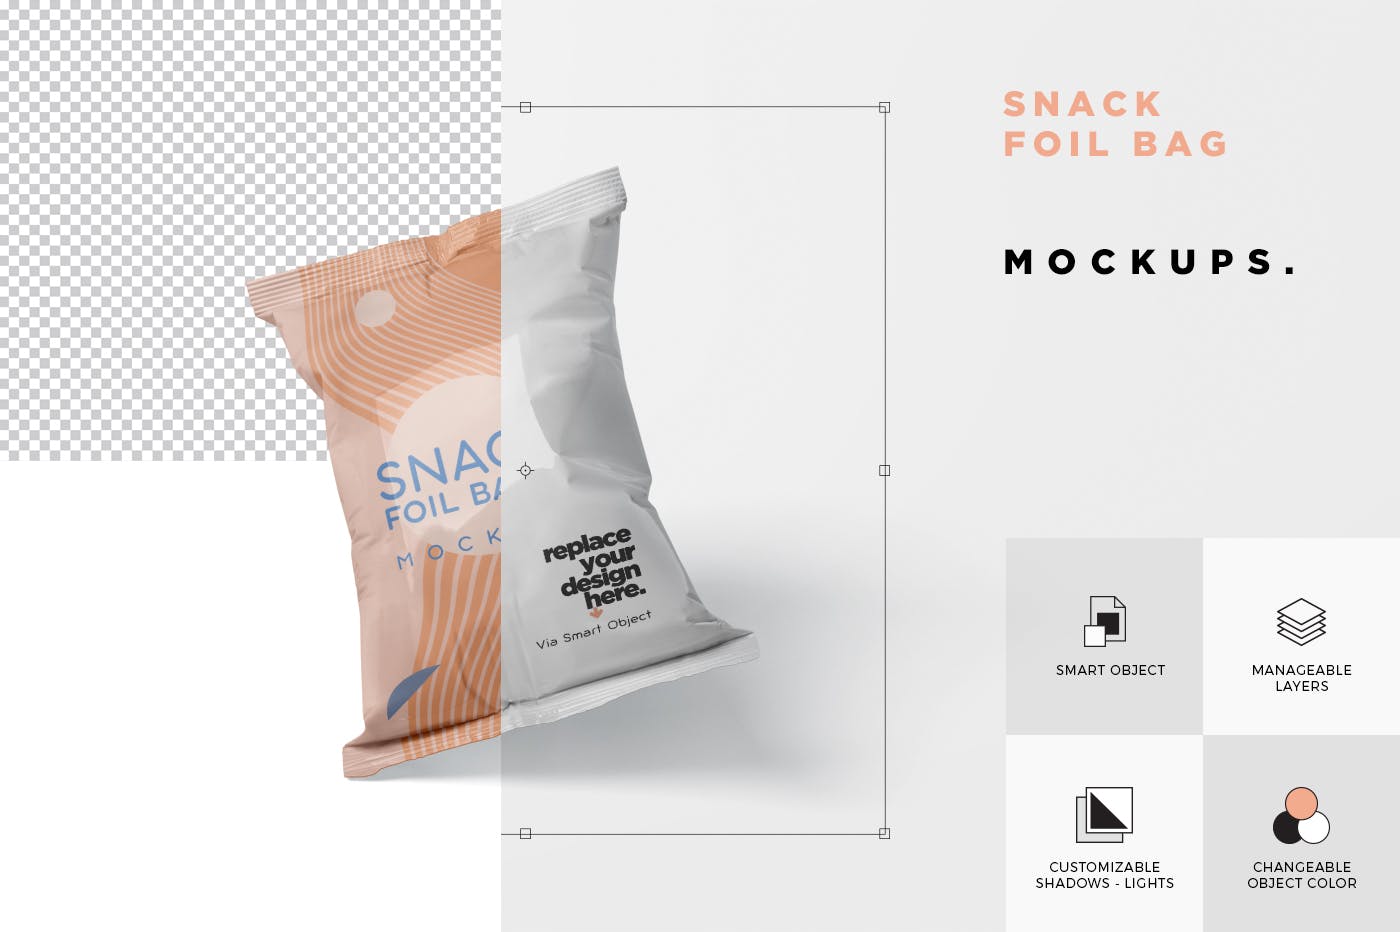 小吃零食铝箔袋/塑料包装袋设计图蚂蚁素材精选 Snack Foil Bag Mockup – Plastic插图(5)